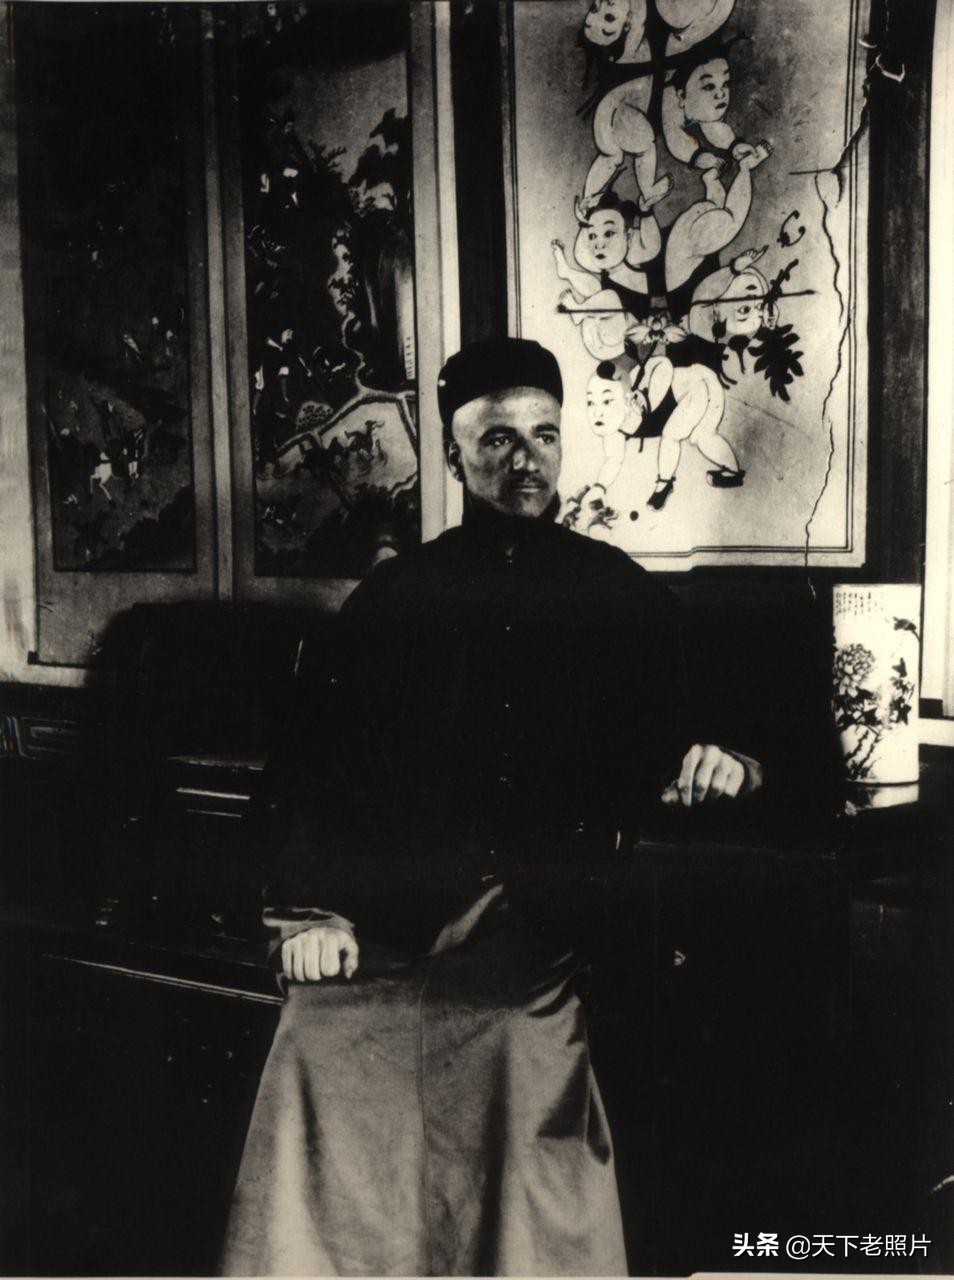 1904年-1914年陕西汉中老照片155张 全面展示彼时汉中风貌(下)